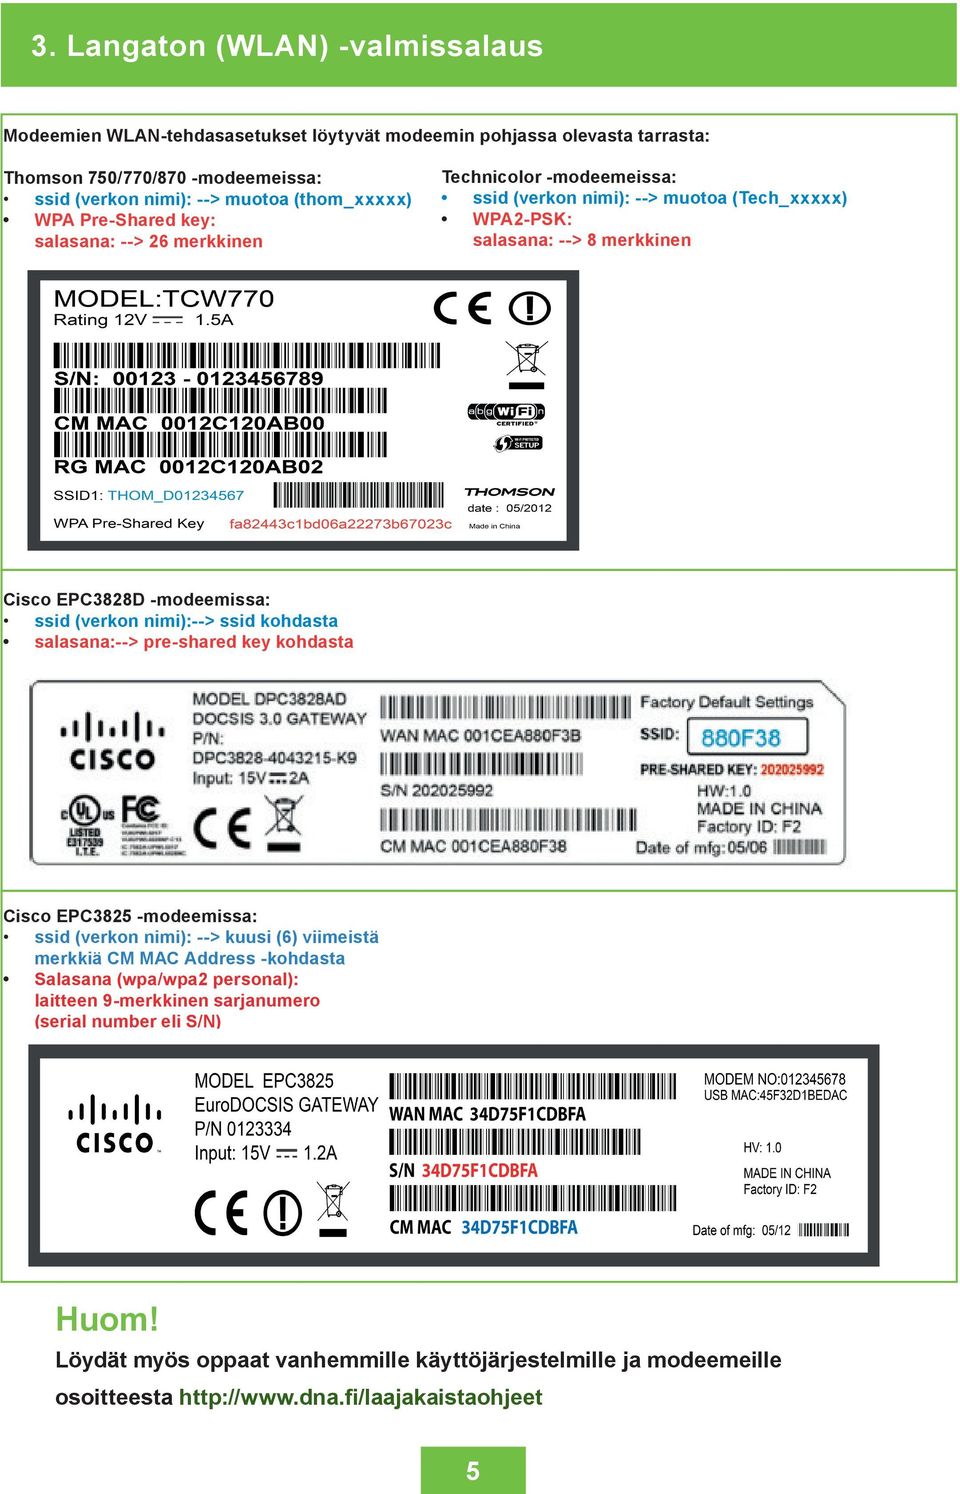 (verkon nimi):--> ssid kohdasta salasana:--> pre-shared key kohdasta Cisco EPC3825 -modeemissa: ssid (verkon nimi): --> kuusi (6) viimeistä merkkiä CM MAC Address -kohdasta Salasana